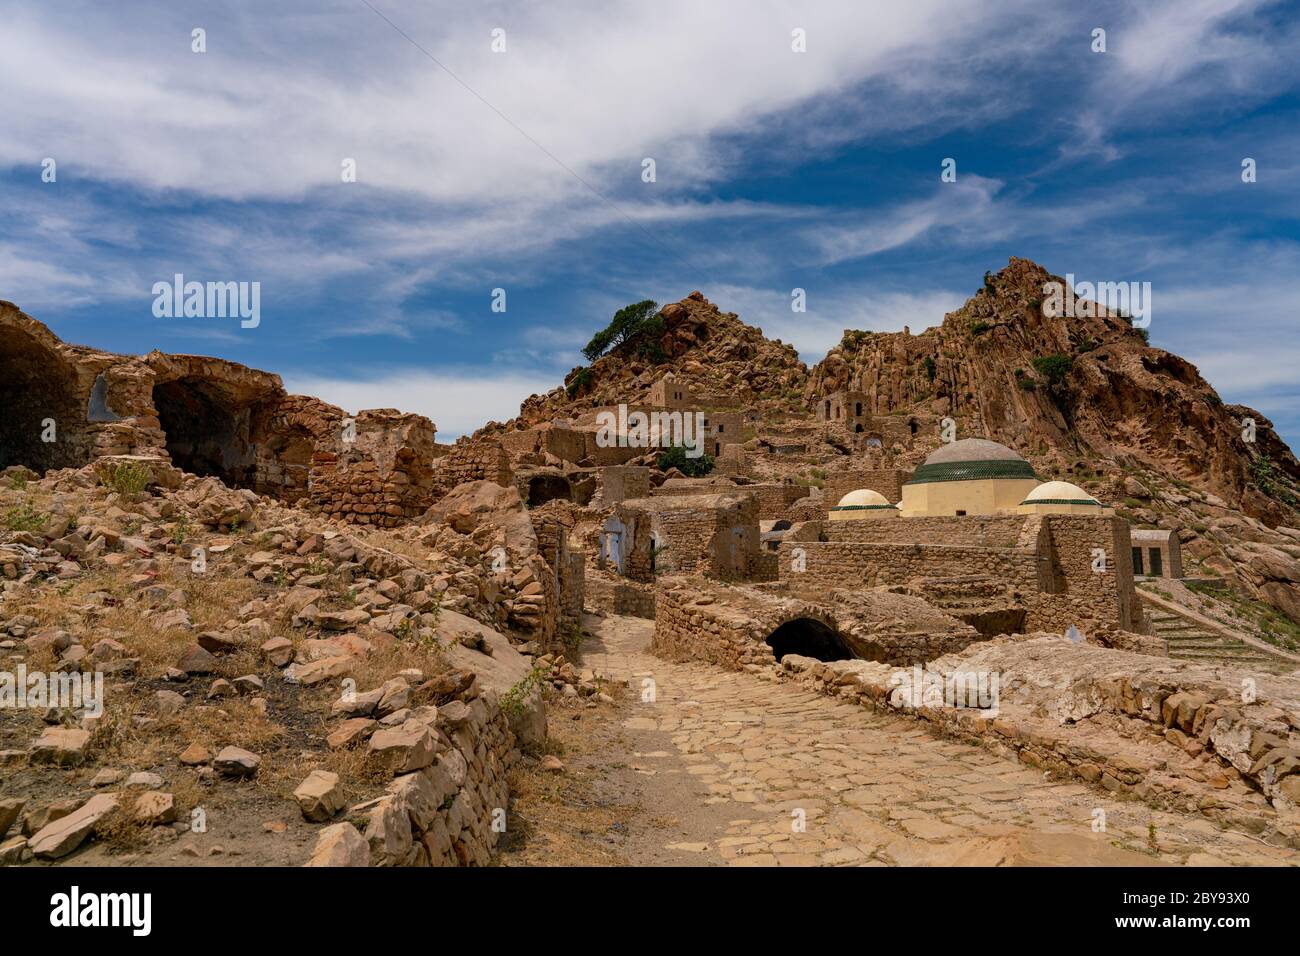 The abandonned  berber village of Zriba, Tunisia Stock Photo